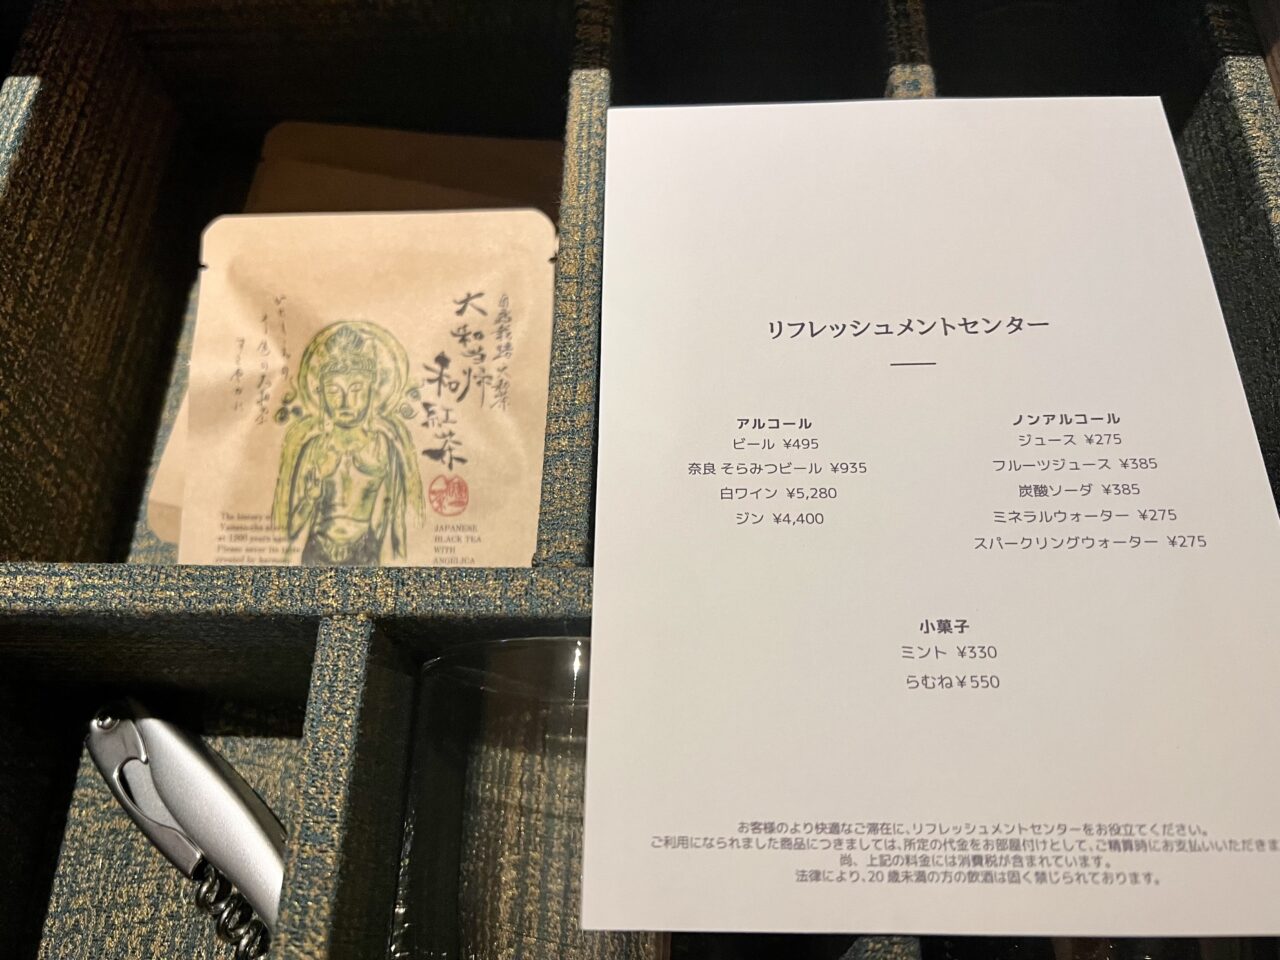 紫翠ラグジュアリーコレクションホテル奈良の客室(デラックスキング・温泉風呂付)の無料ドリンク